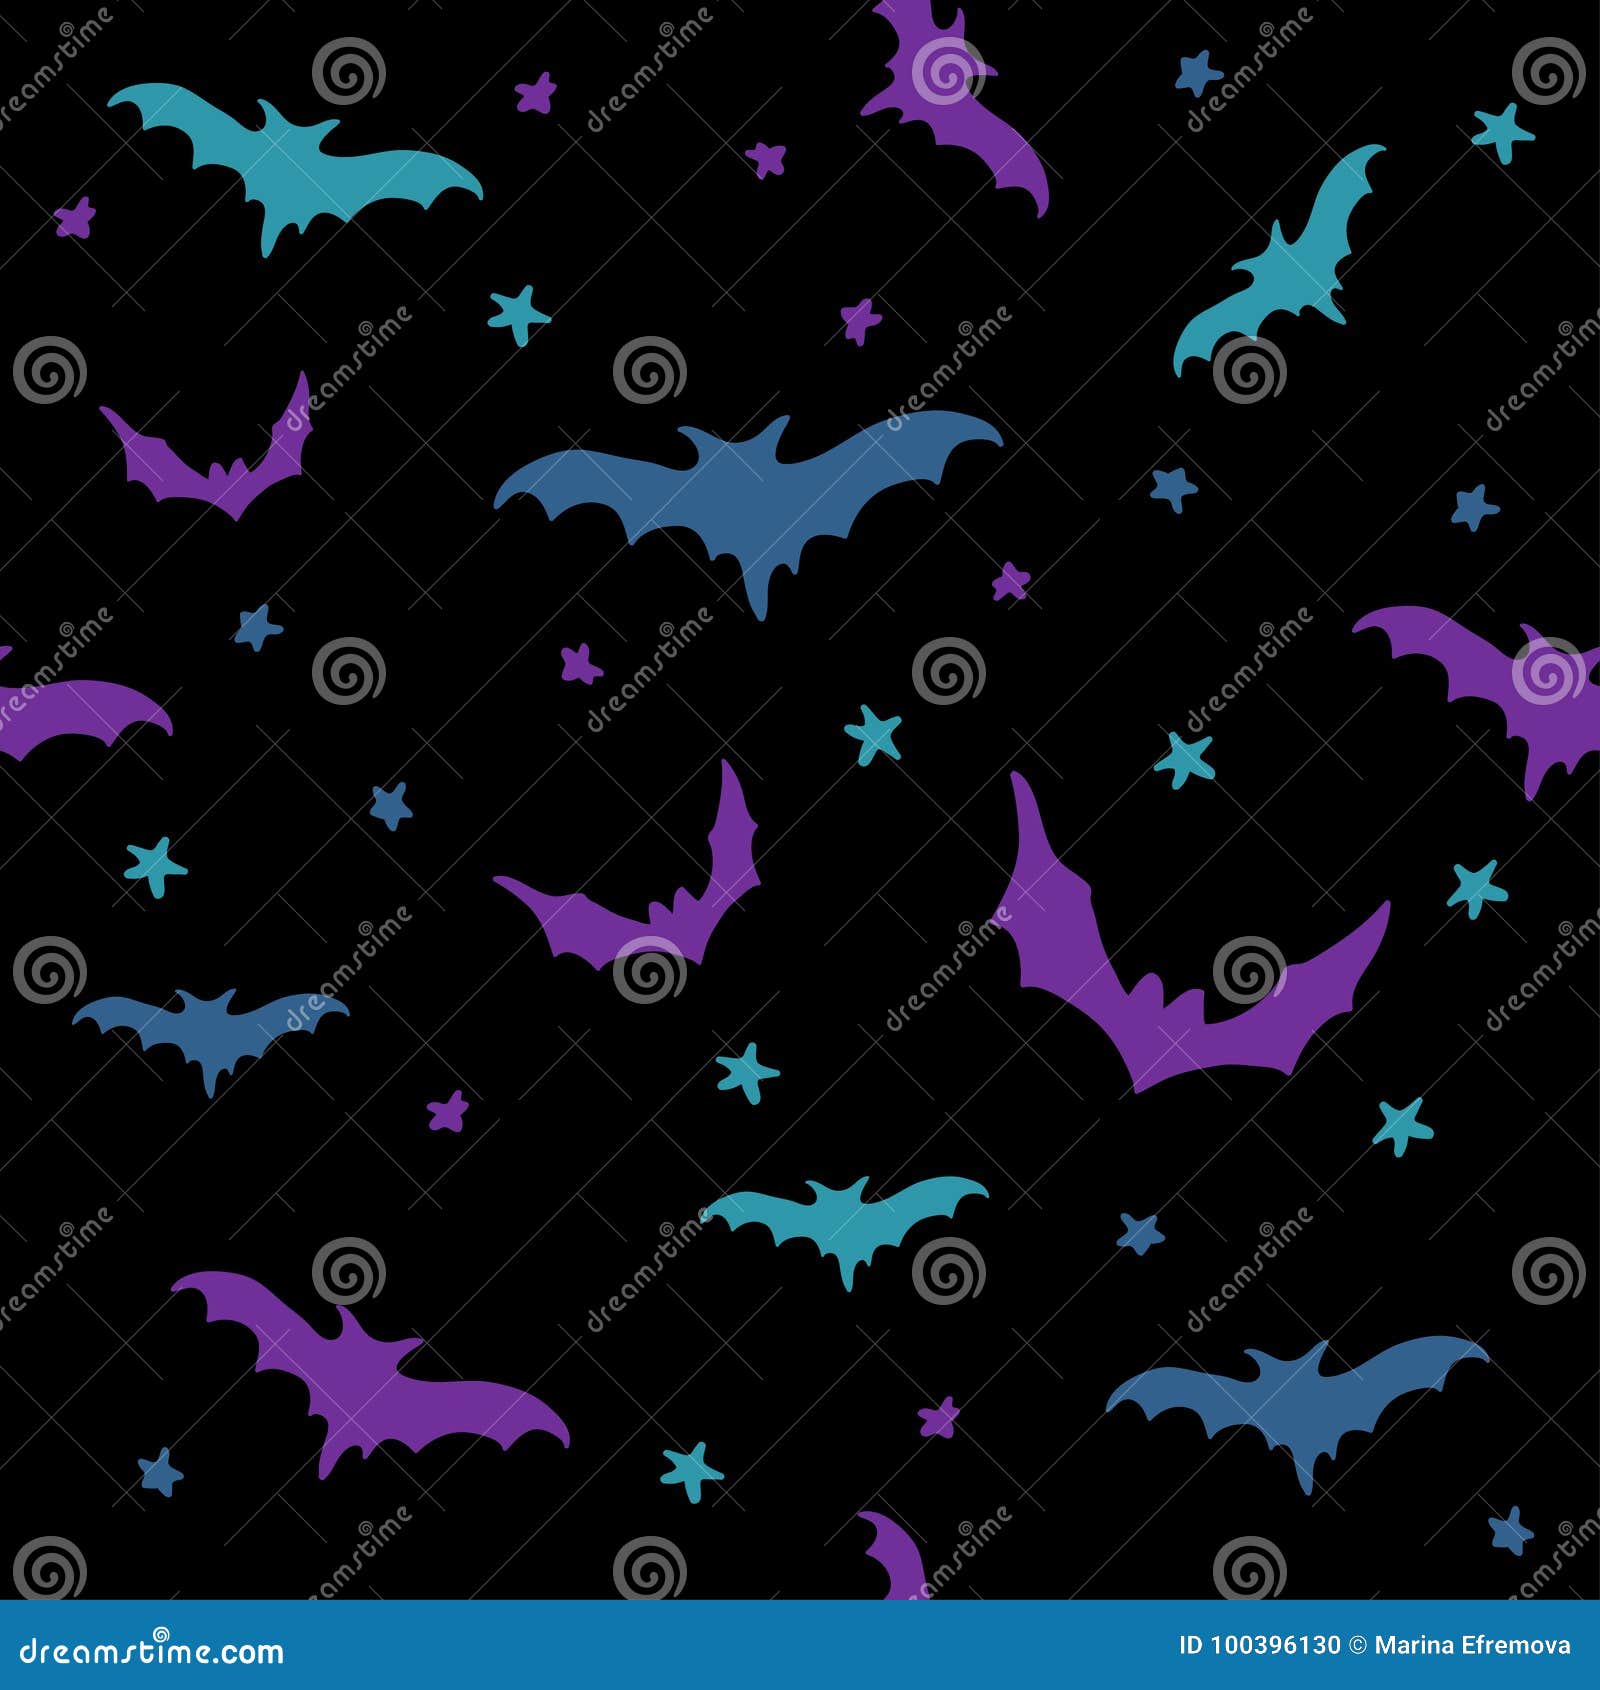 48 Bat Wallpapers  WallpaperSafari